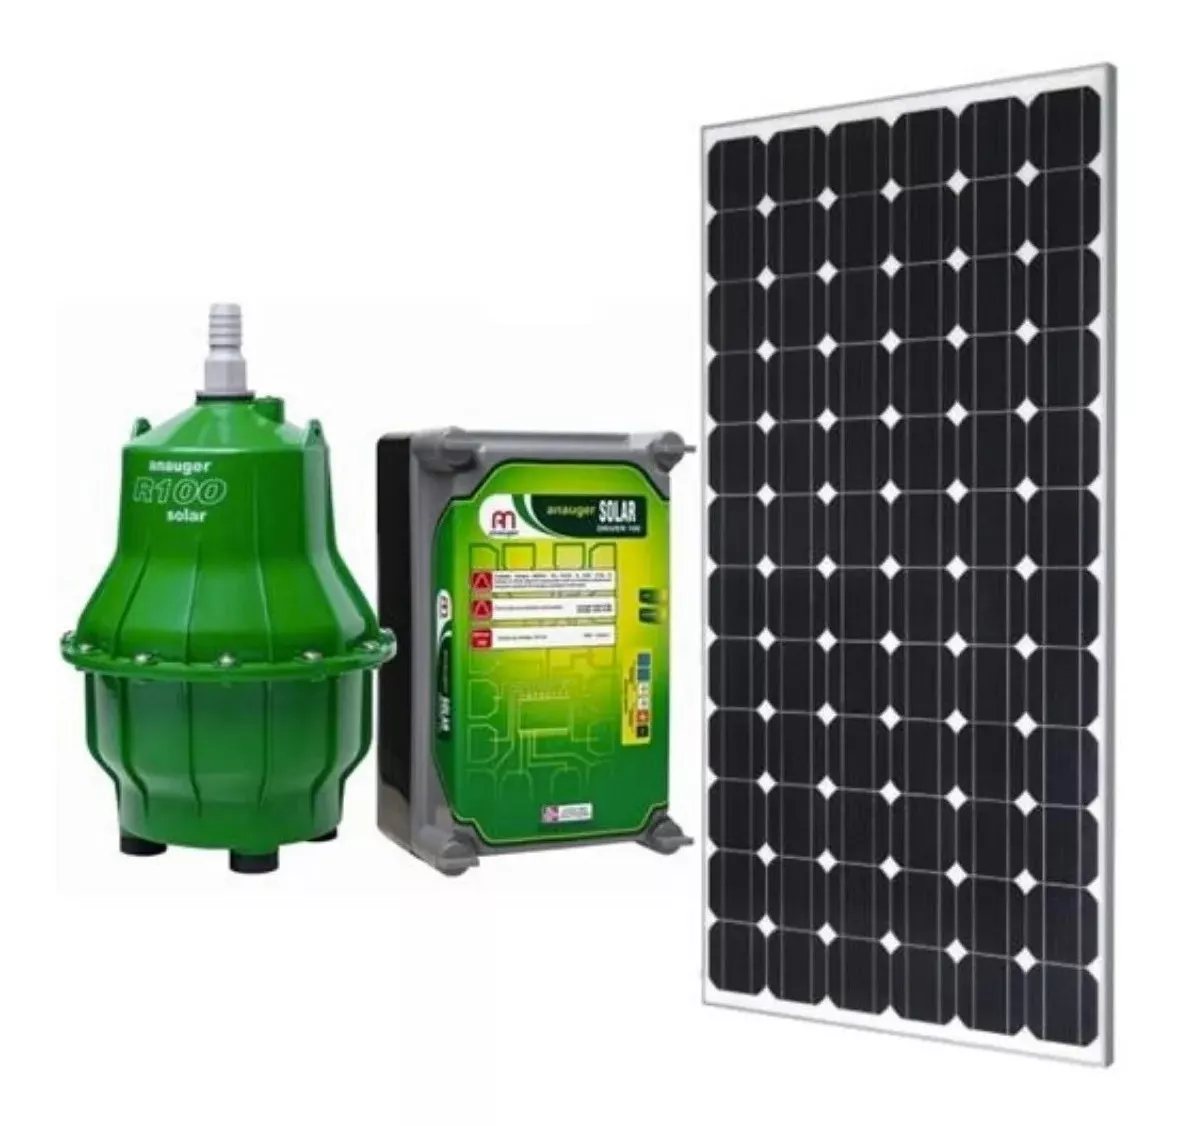 Kit Bomba Solar Anauger R100 - 8600l/dia